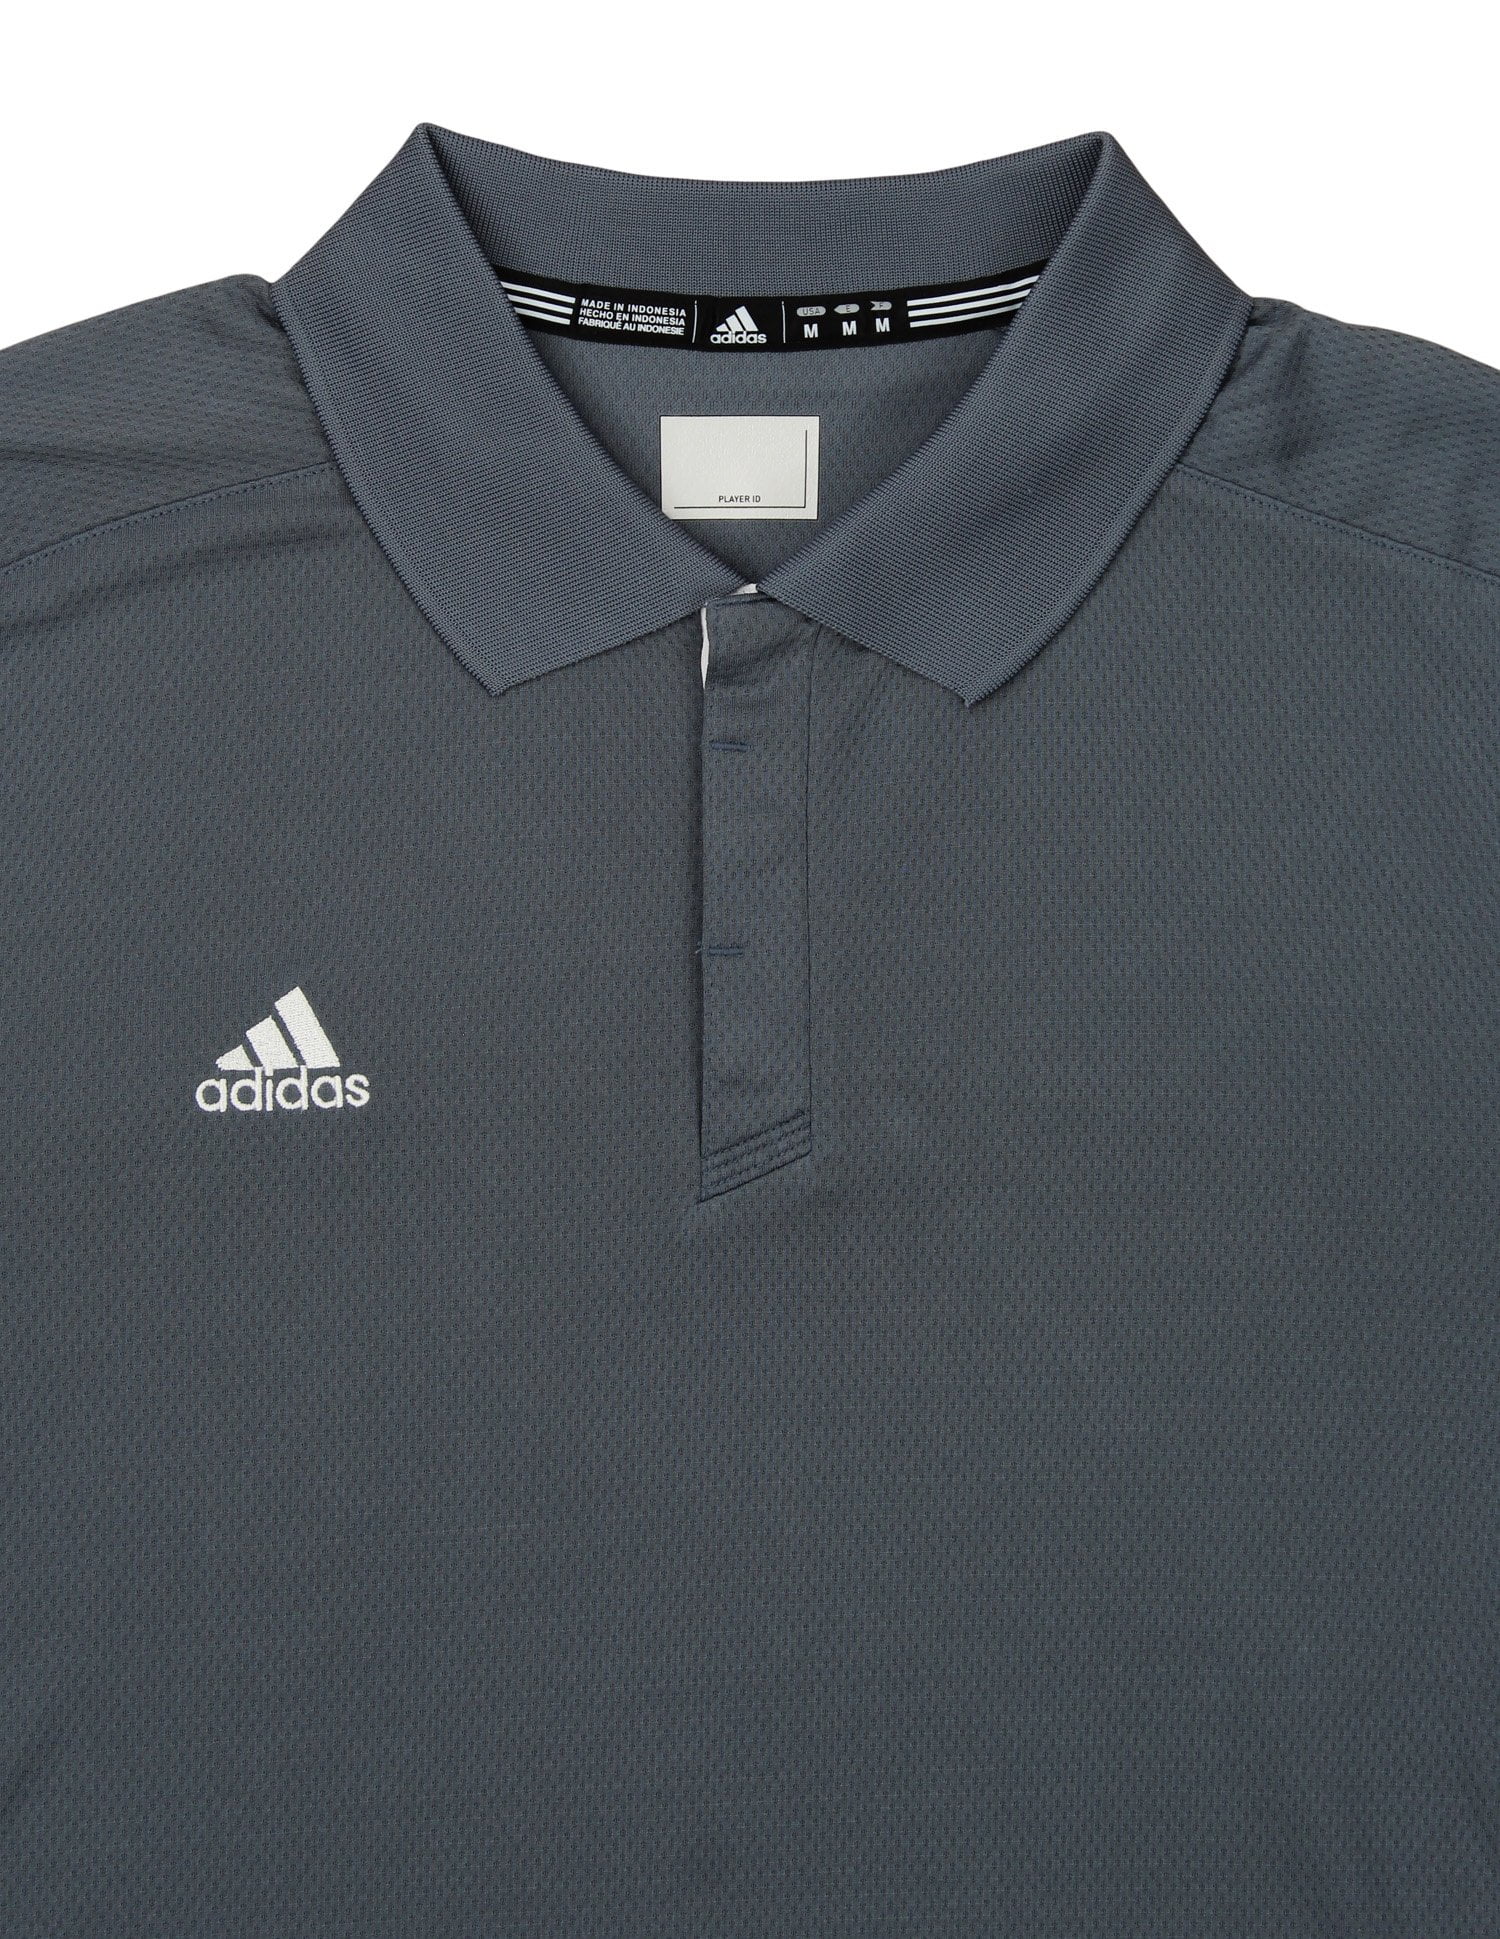 Adidas Men's Team Polo, Color Options - Walmart.com